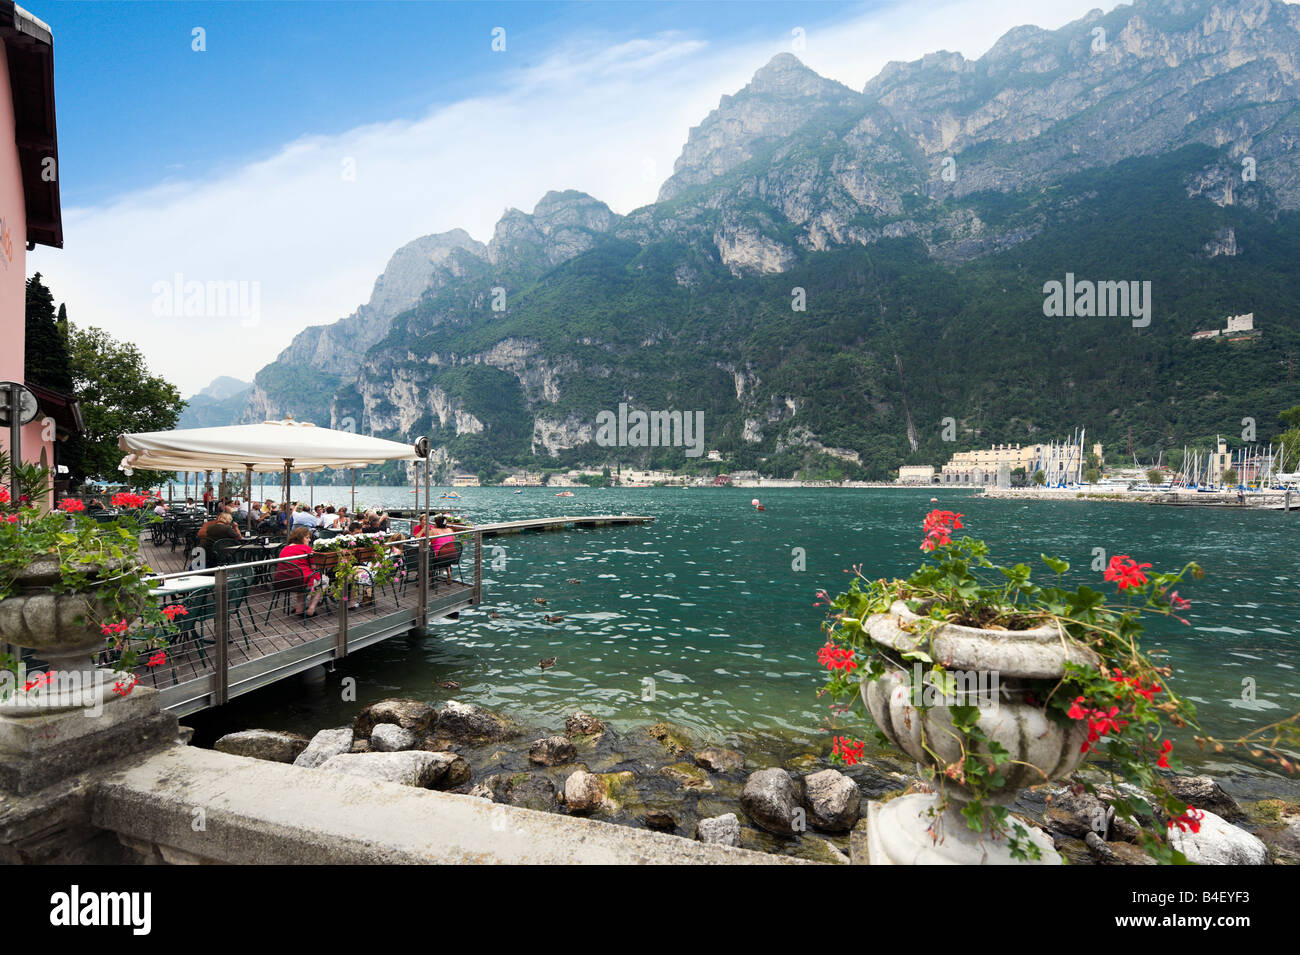 Am Seeufer Cafe, Riva del Garda, Gardasee, Italien Stockfoto